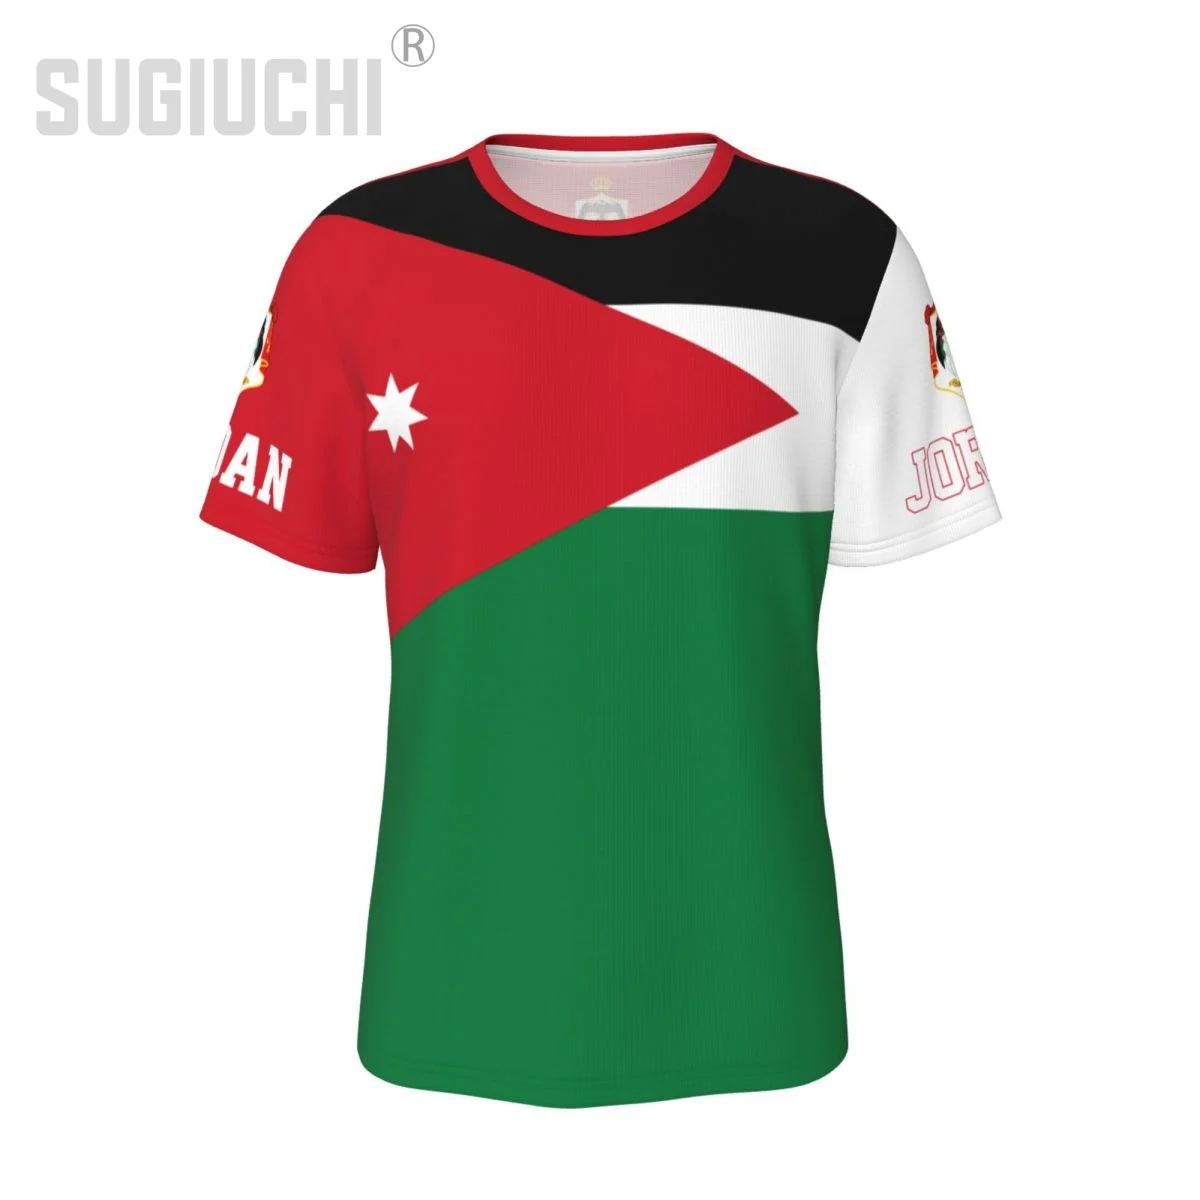 Унисекс тениска с националния флаг Йордания, Иорданские тениски, джърси За Мъже И Жени, Футболни фенове, Подаръци, дрехи по поръчка, тениска Изображение 0 